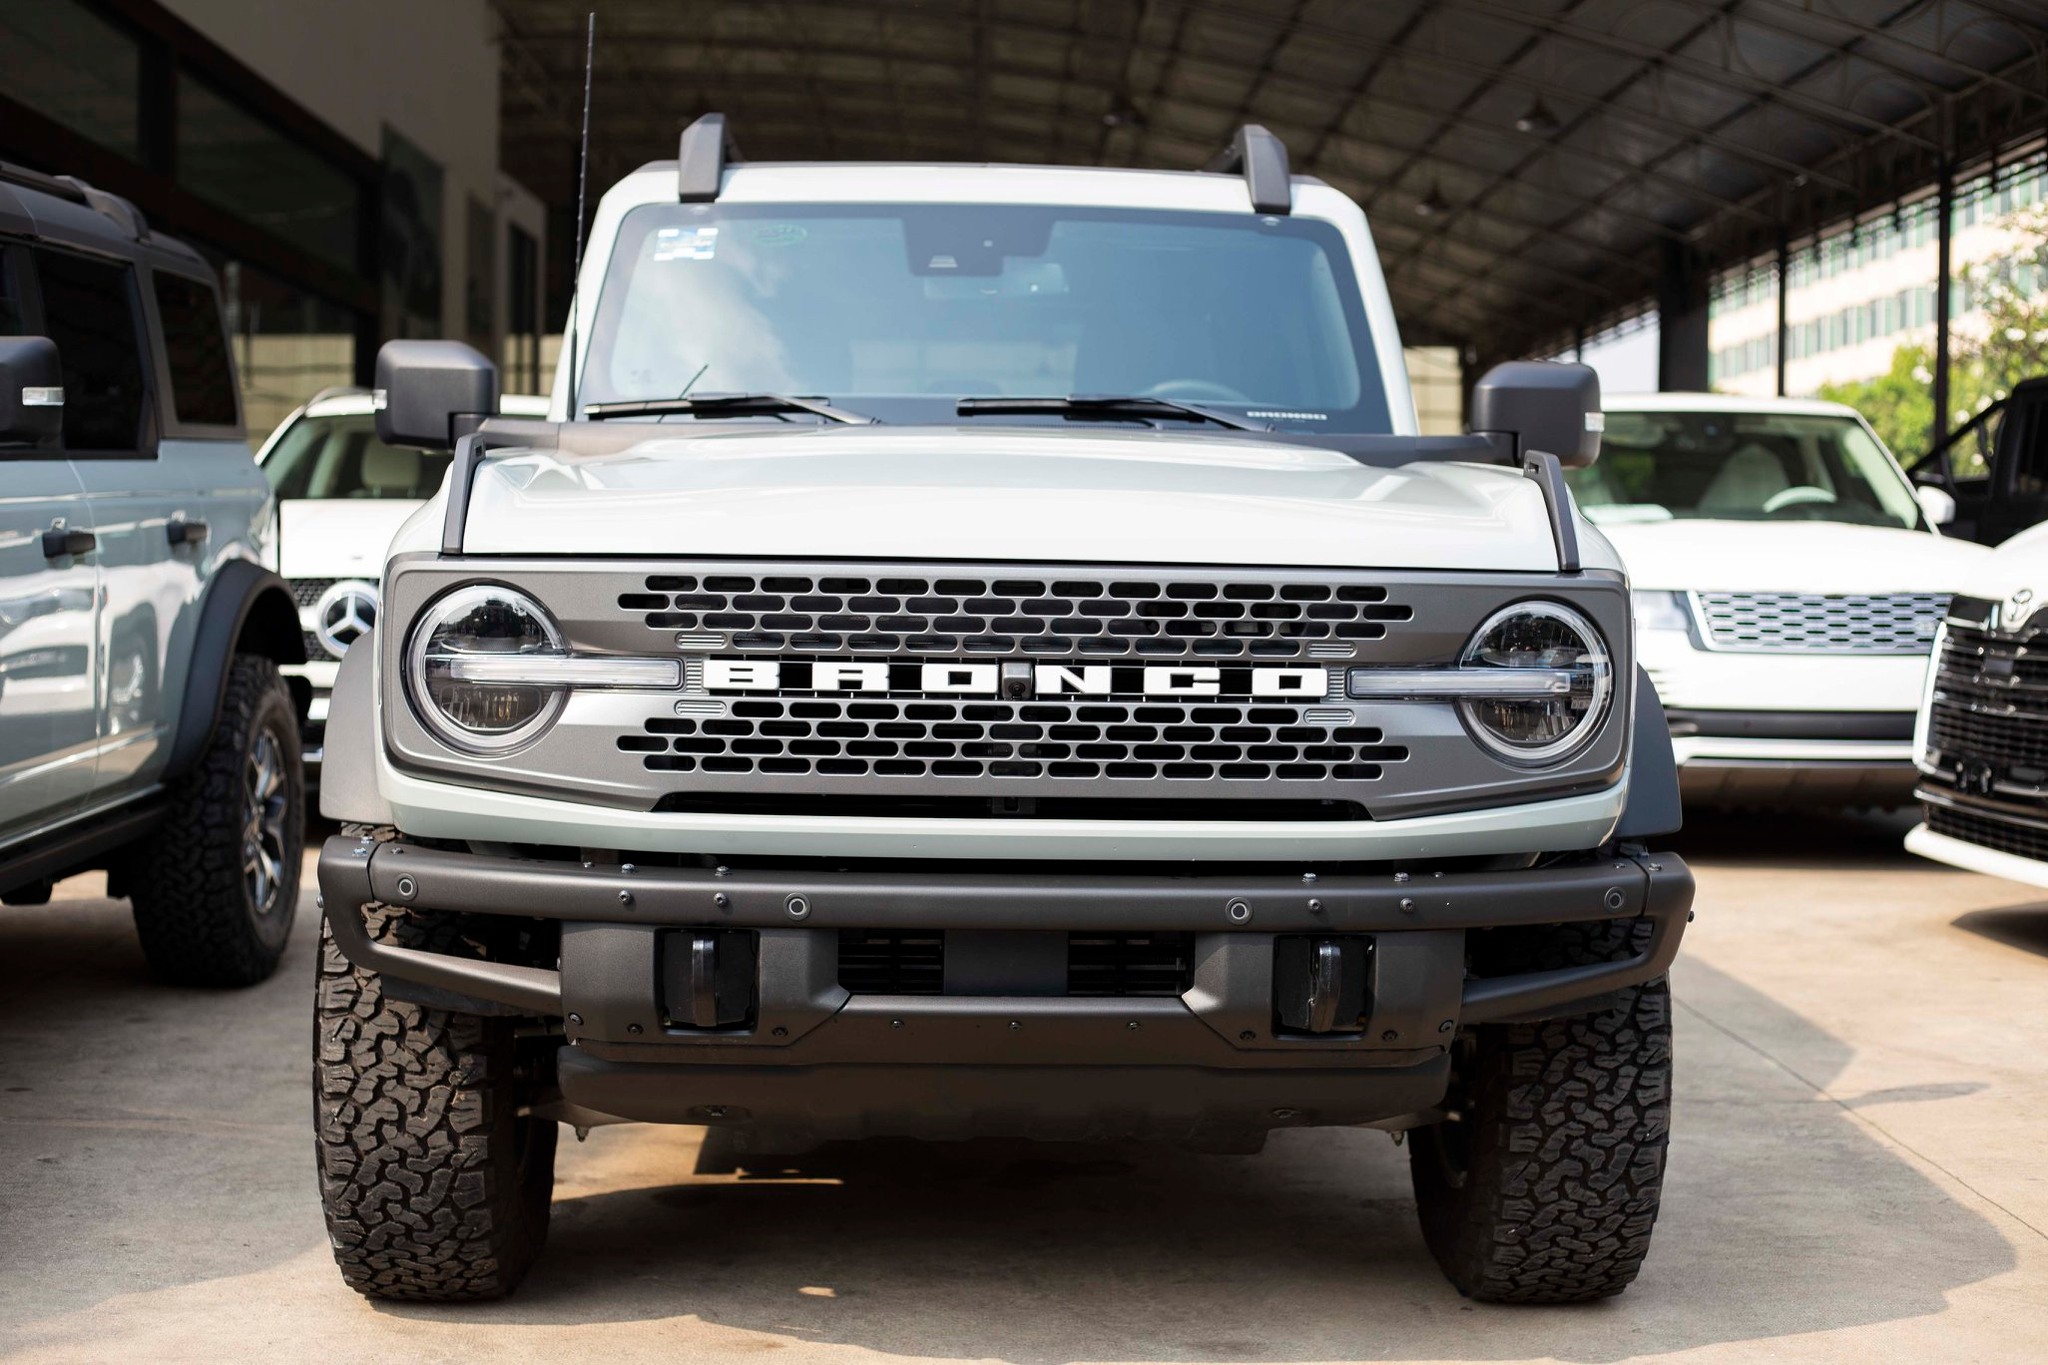 Ford Bronco 2021 xuất hiện tại Campuchia, chờ ngày về Việt Nam 272966759-2768117760163153-173334991467496670-n.jpeg